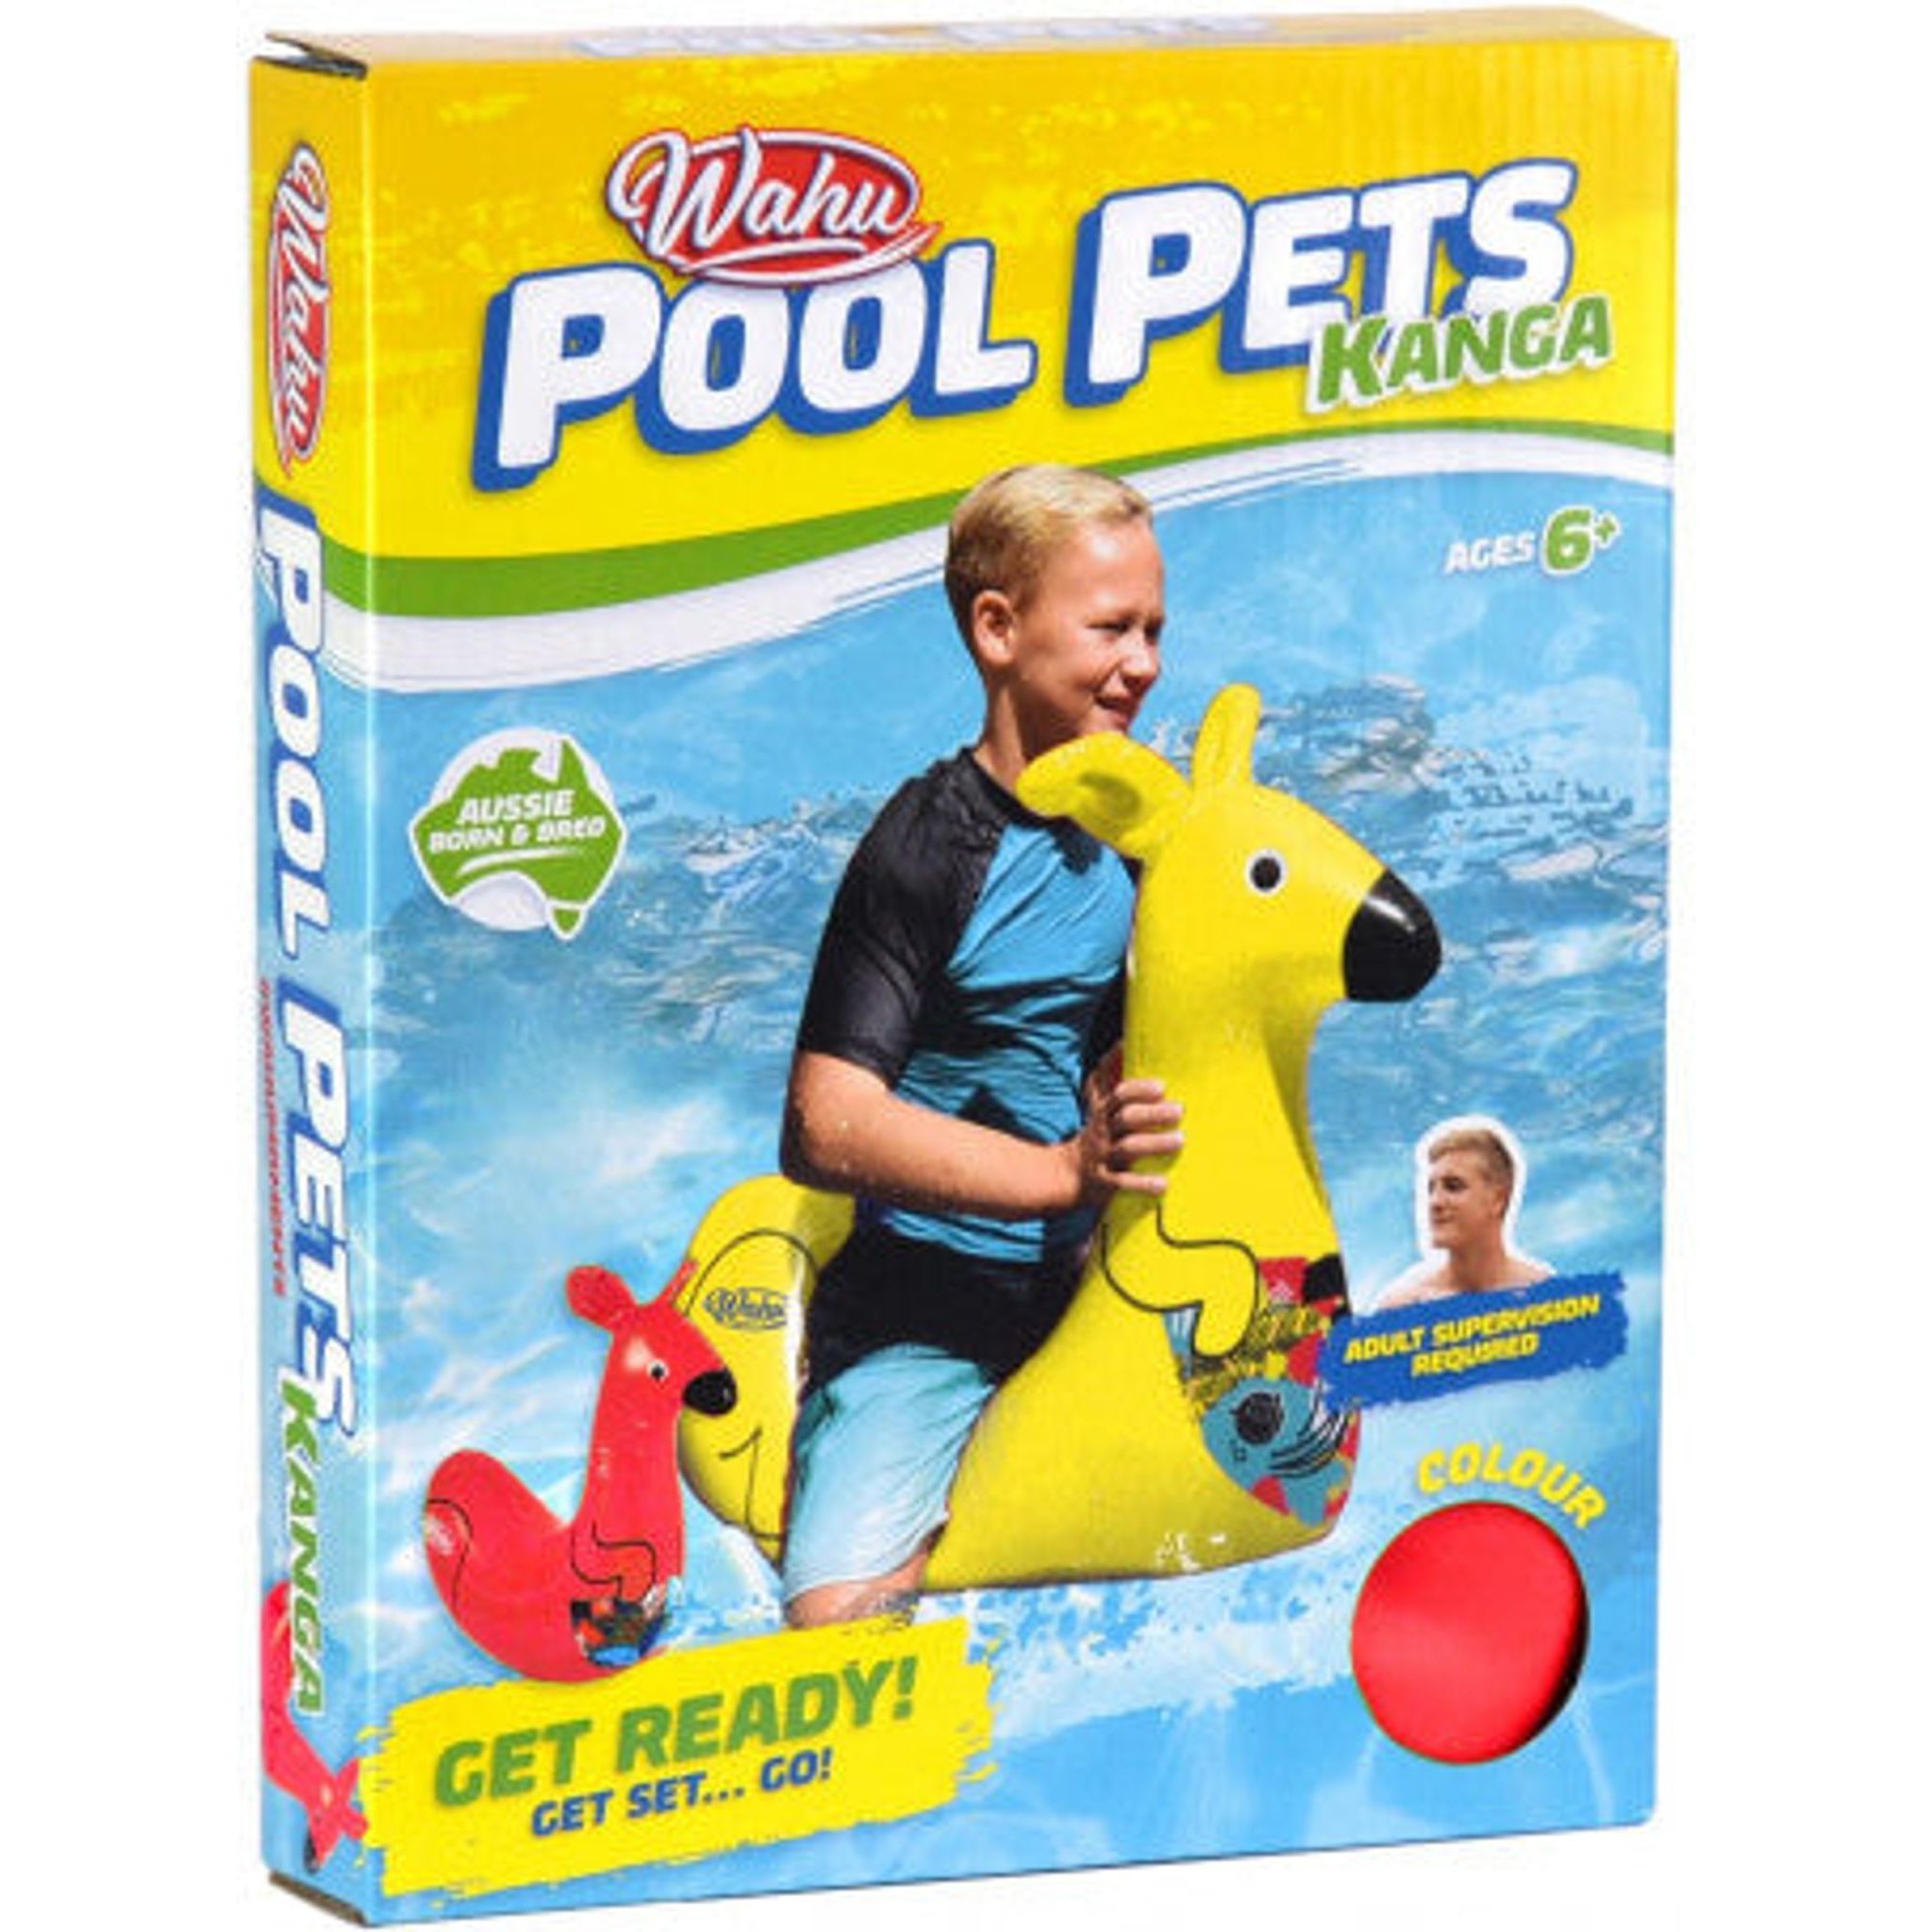 Wahu Pool Pets - Toybox Tales